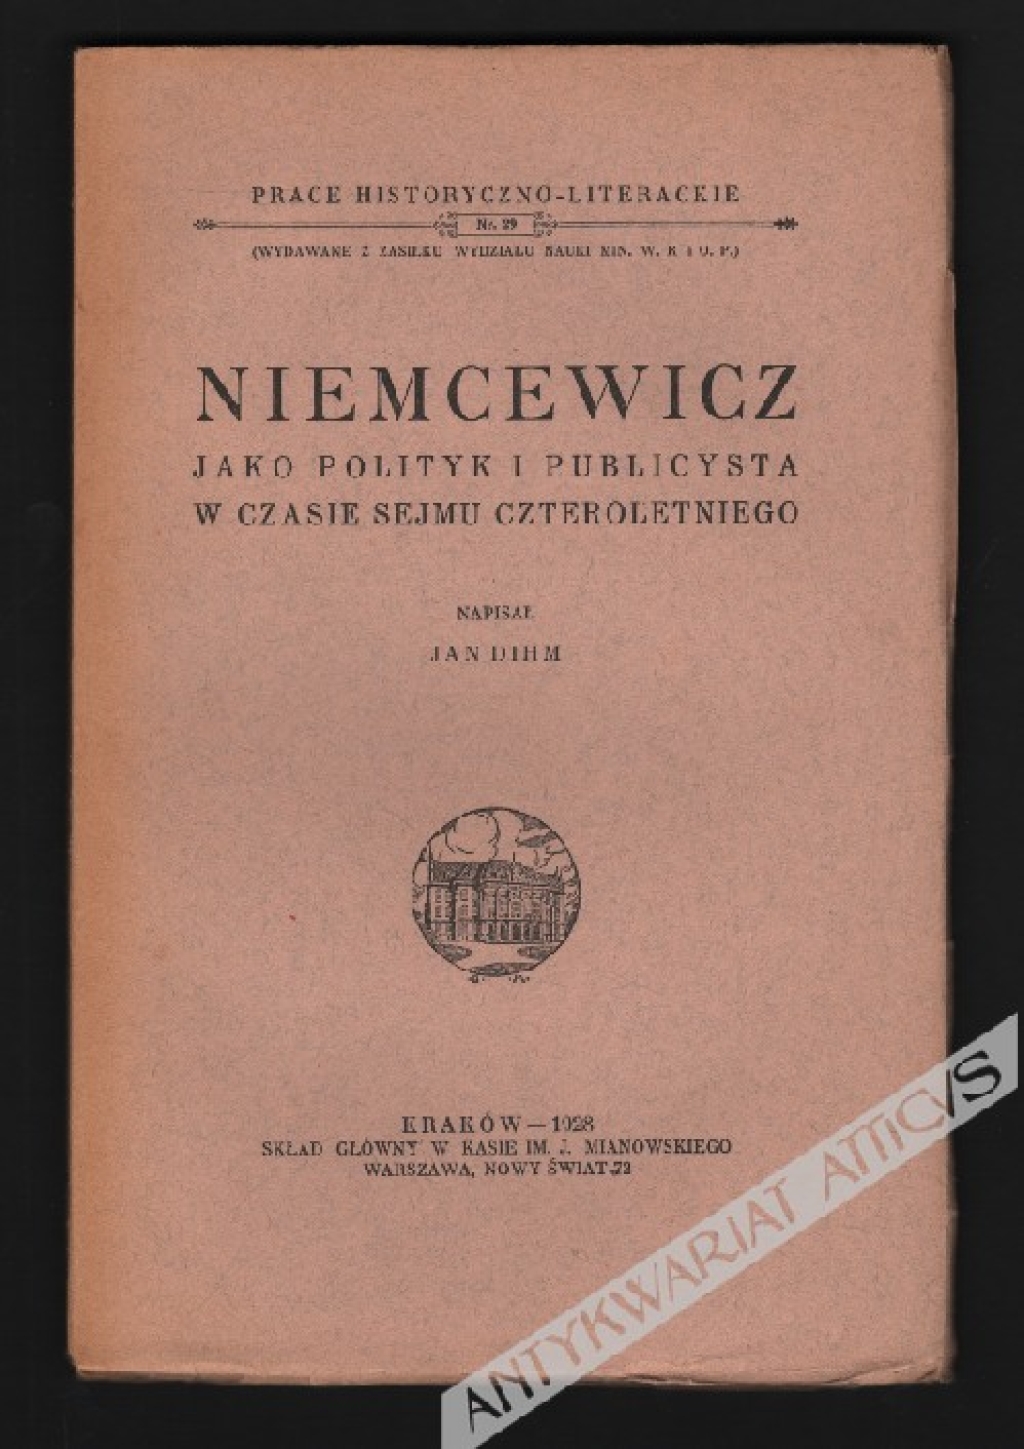 Niemcewicz jako polityk i publicysta w czasie sejmu czteroletniego.